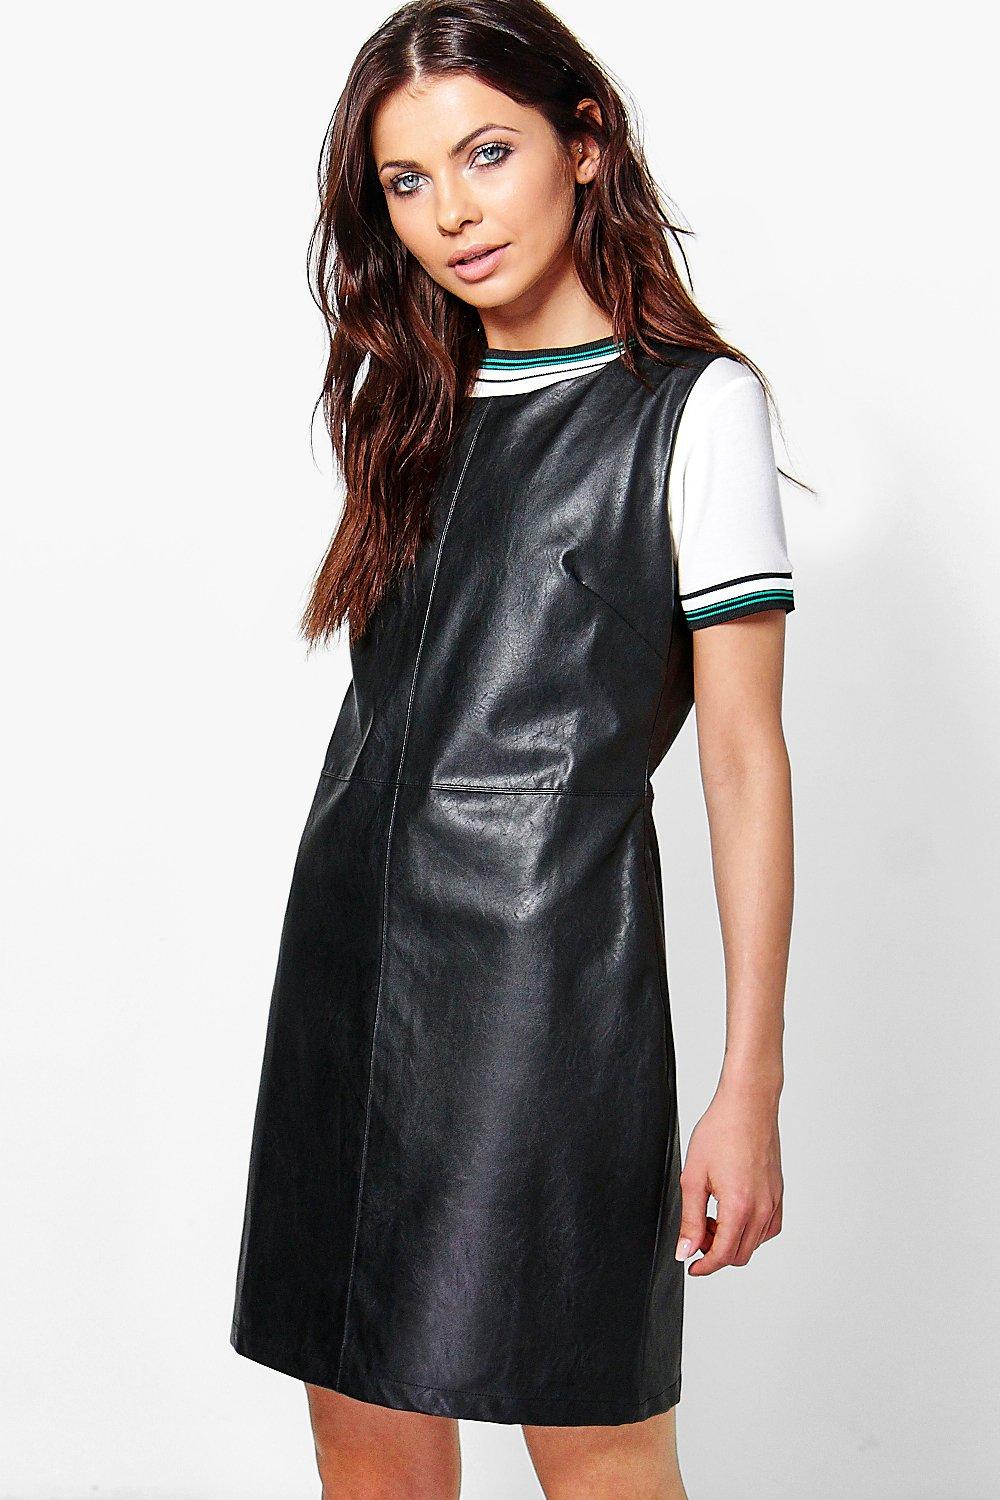 leather a line dress